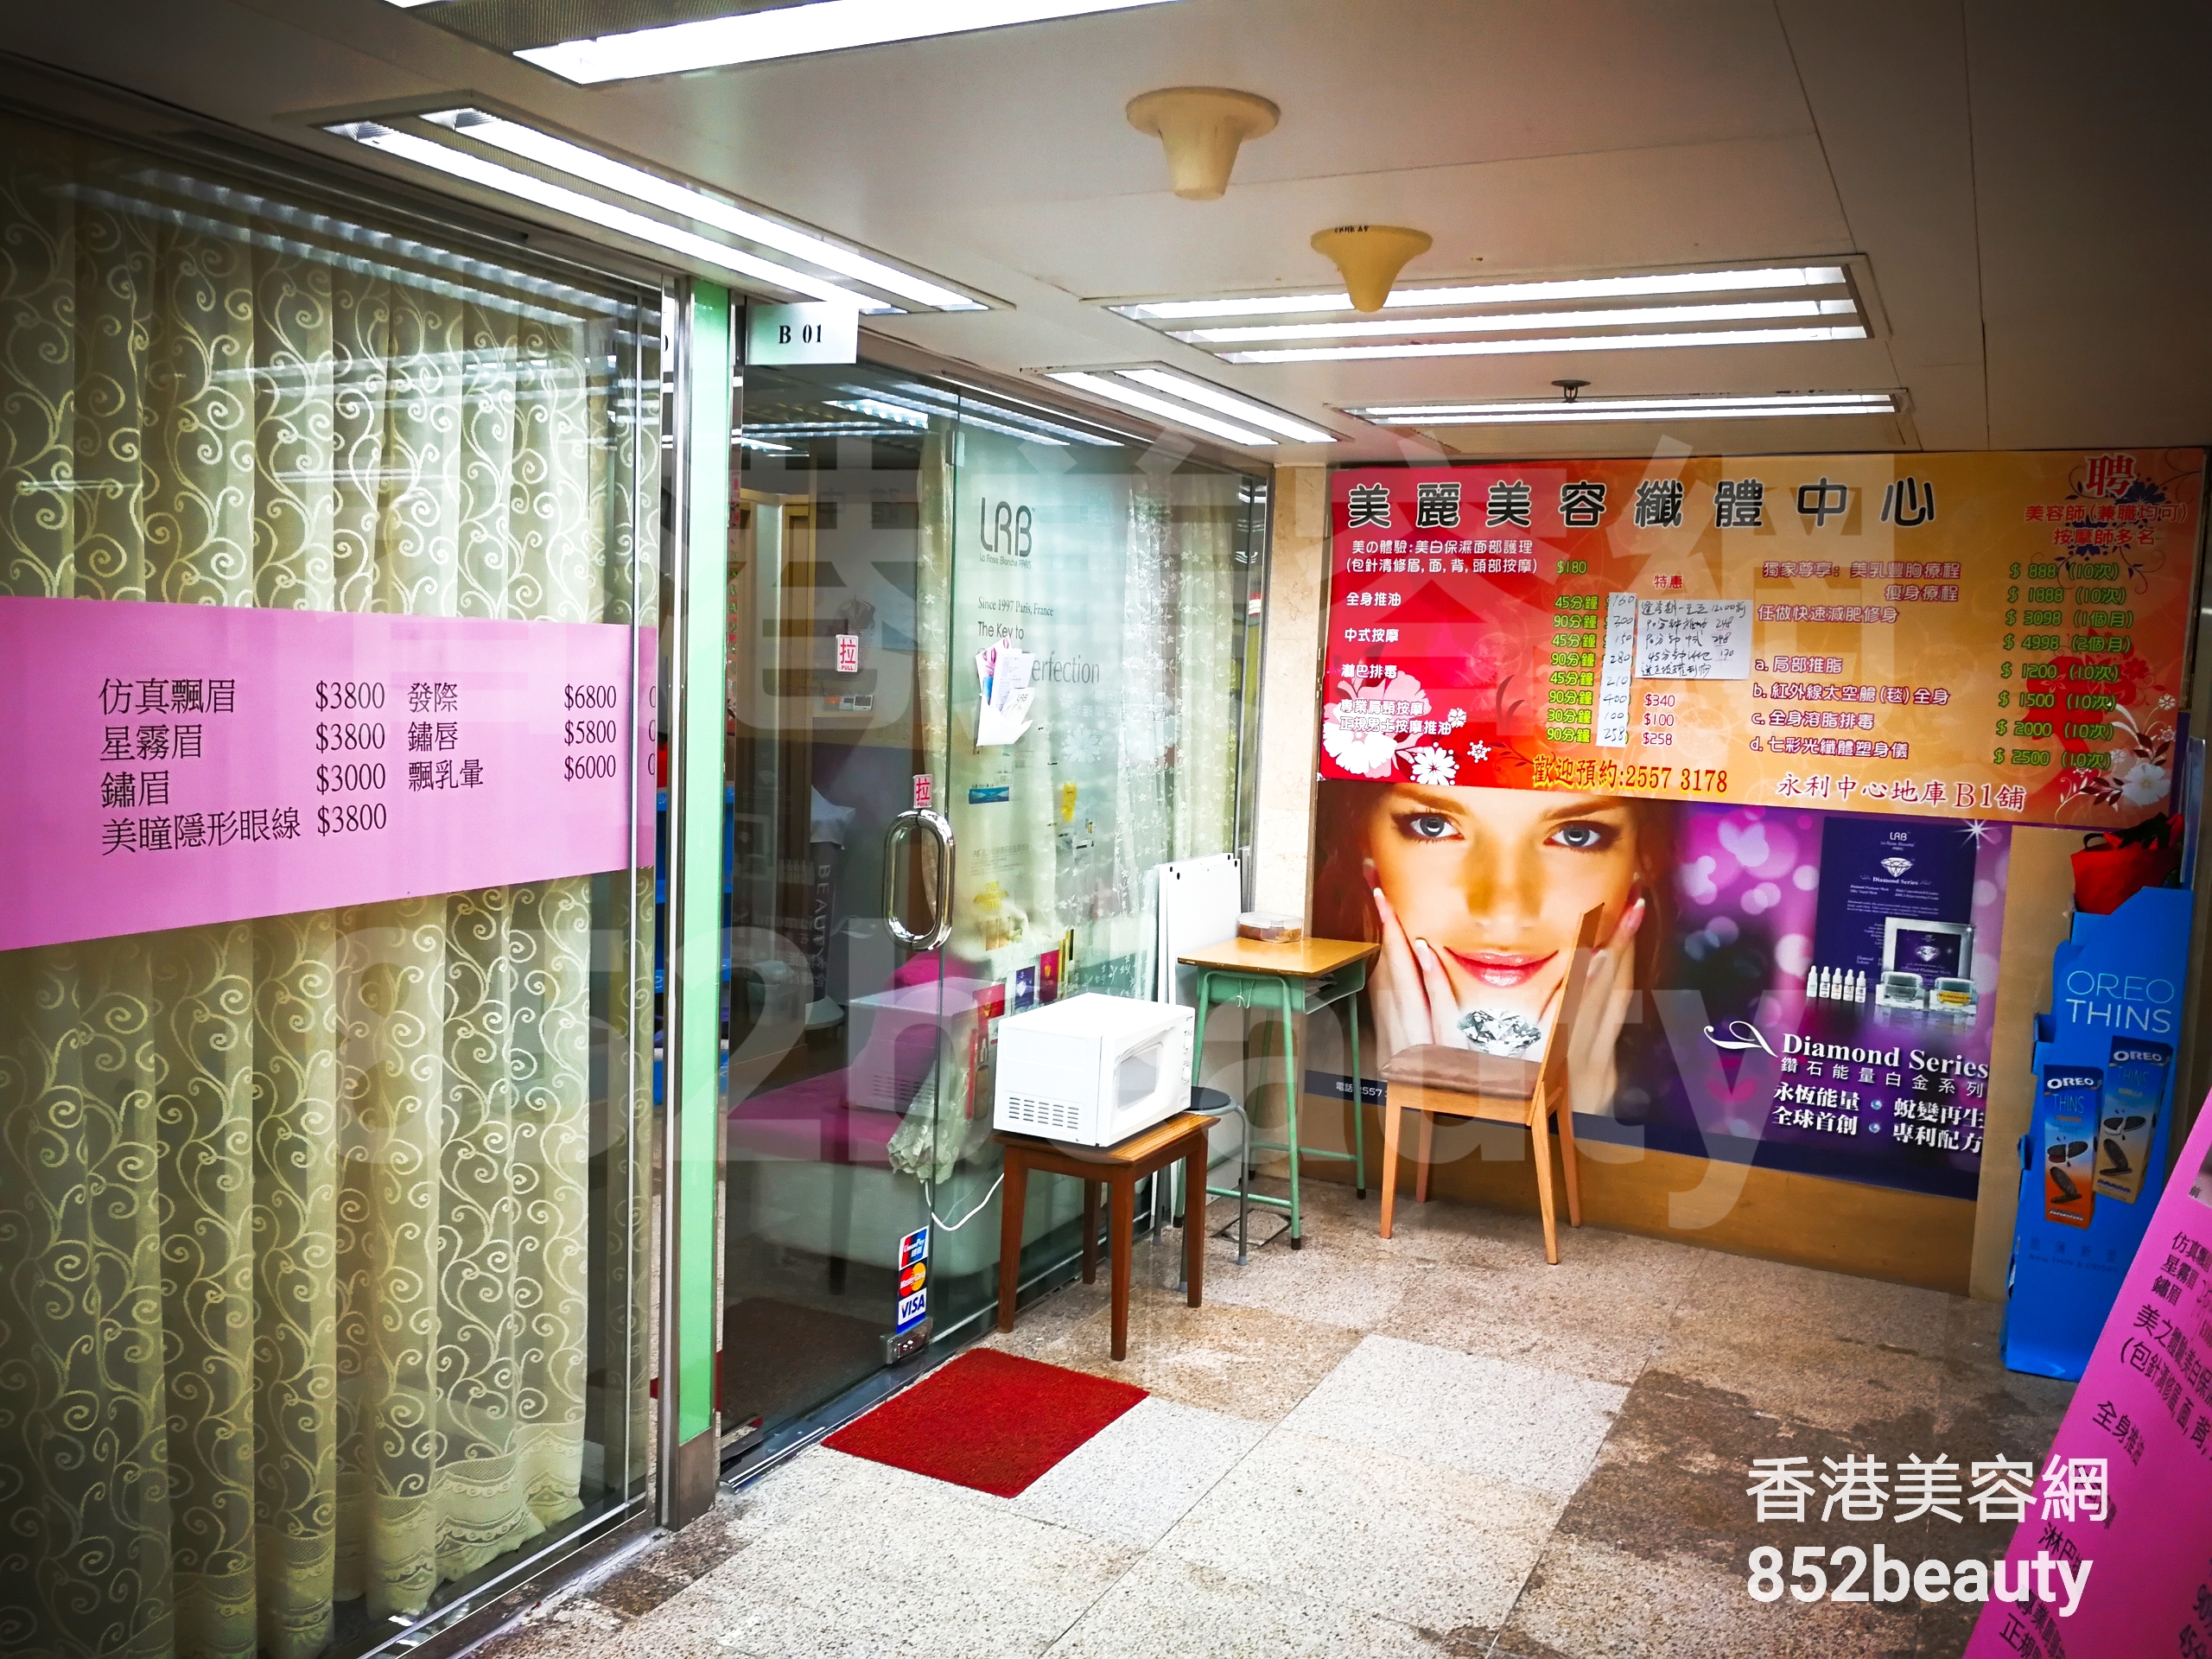 香港美容網 Hong Kong Beauty Salon 美容院 / 美容師: 美麗美容纖體中心